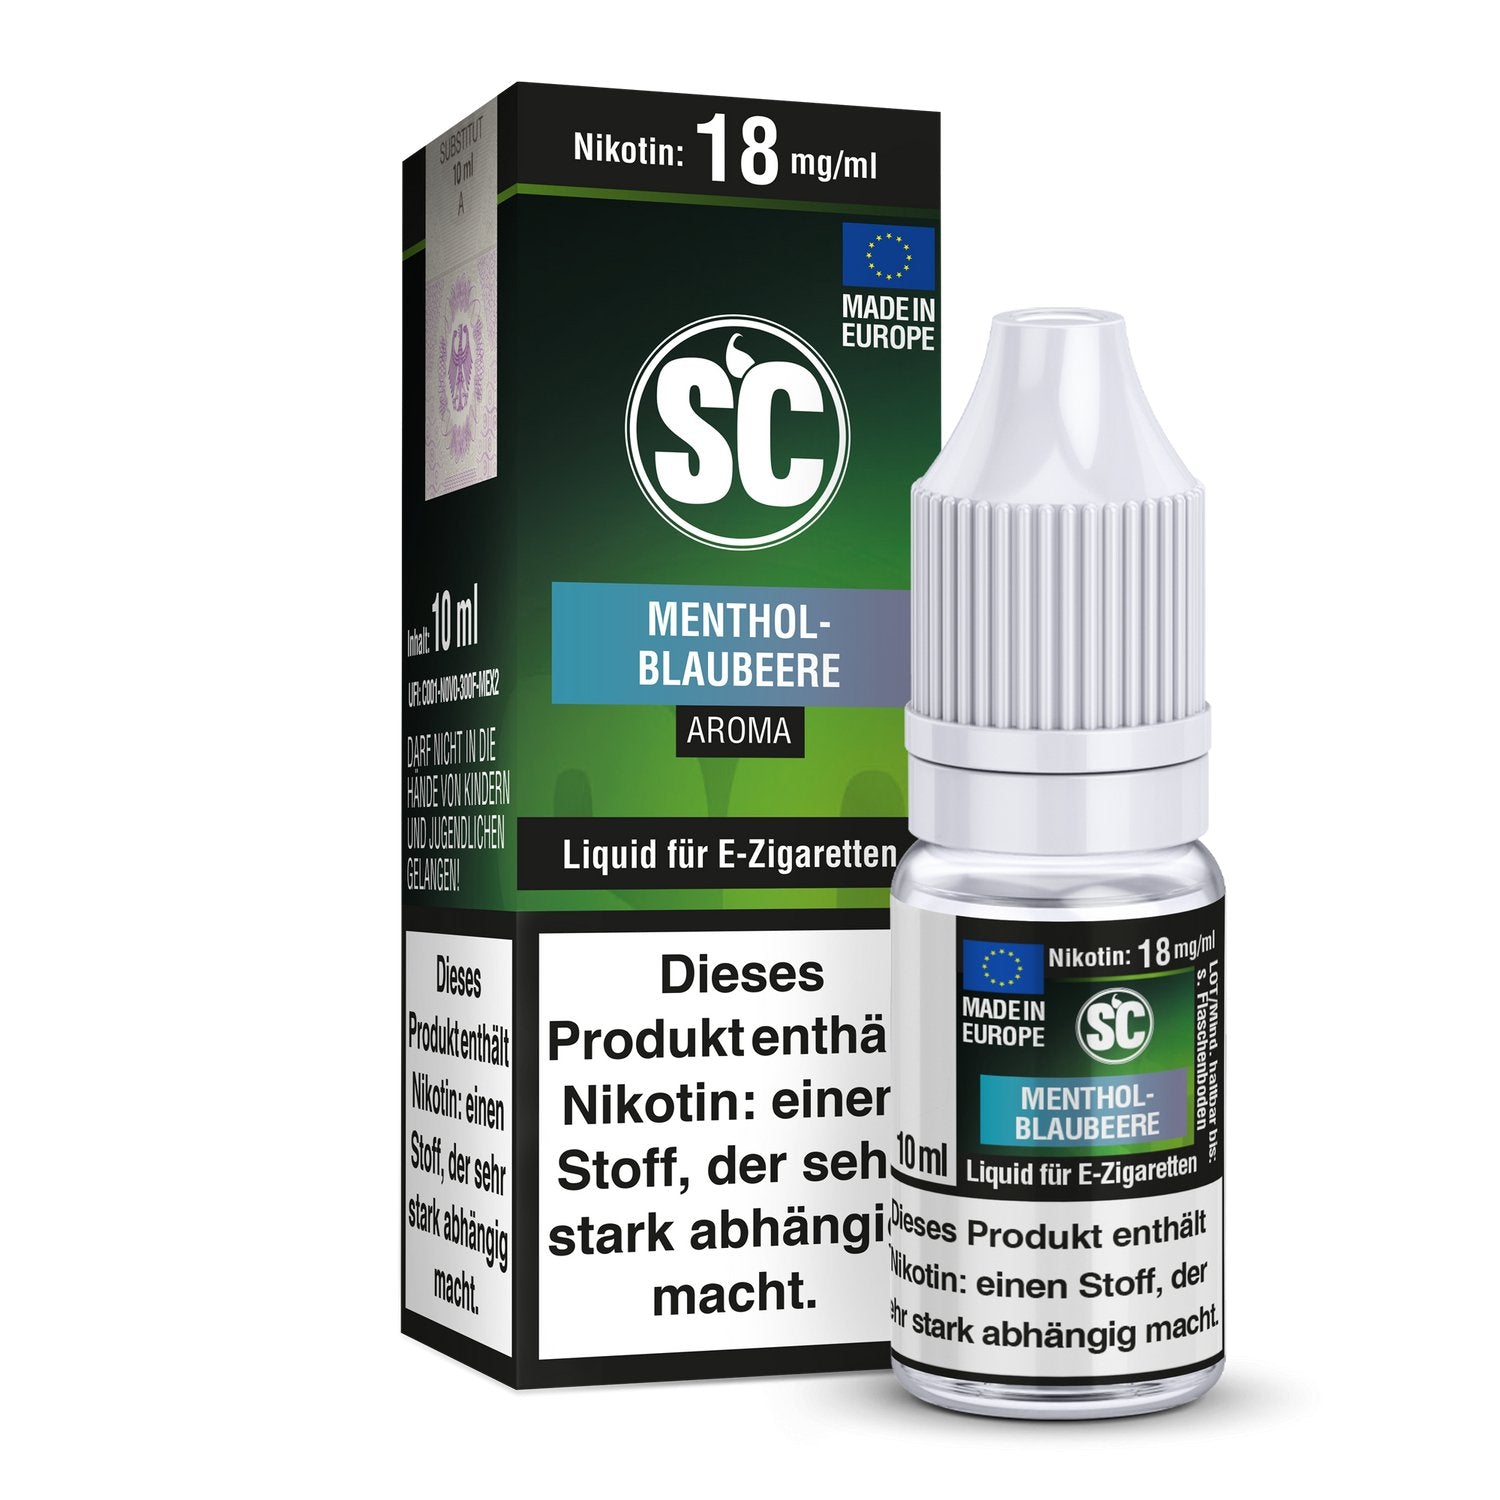 SC - Menthol-Blaubeere - 10ml Fertigliquid (Nikotinfrei/Nikotin) Vapes4you